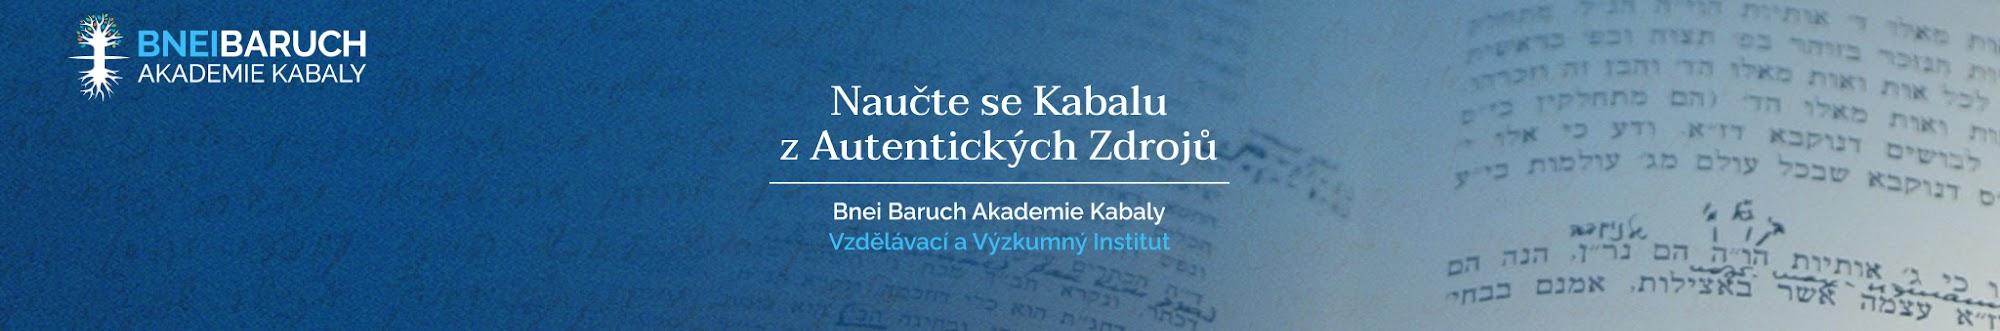 Bnei Baruch Akademie Kabaly